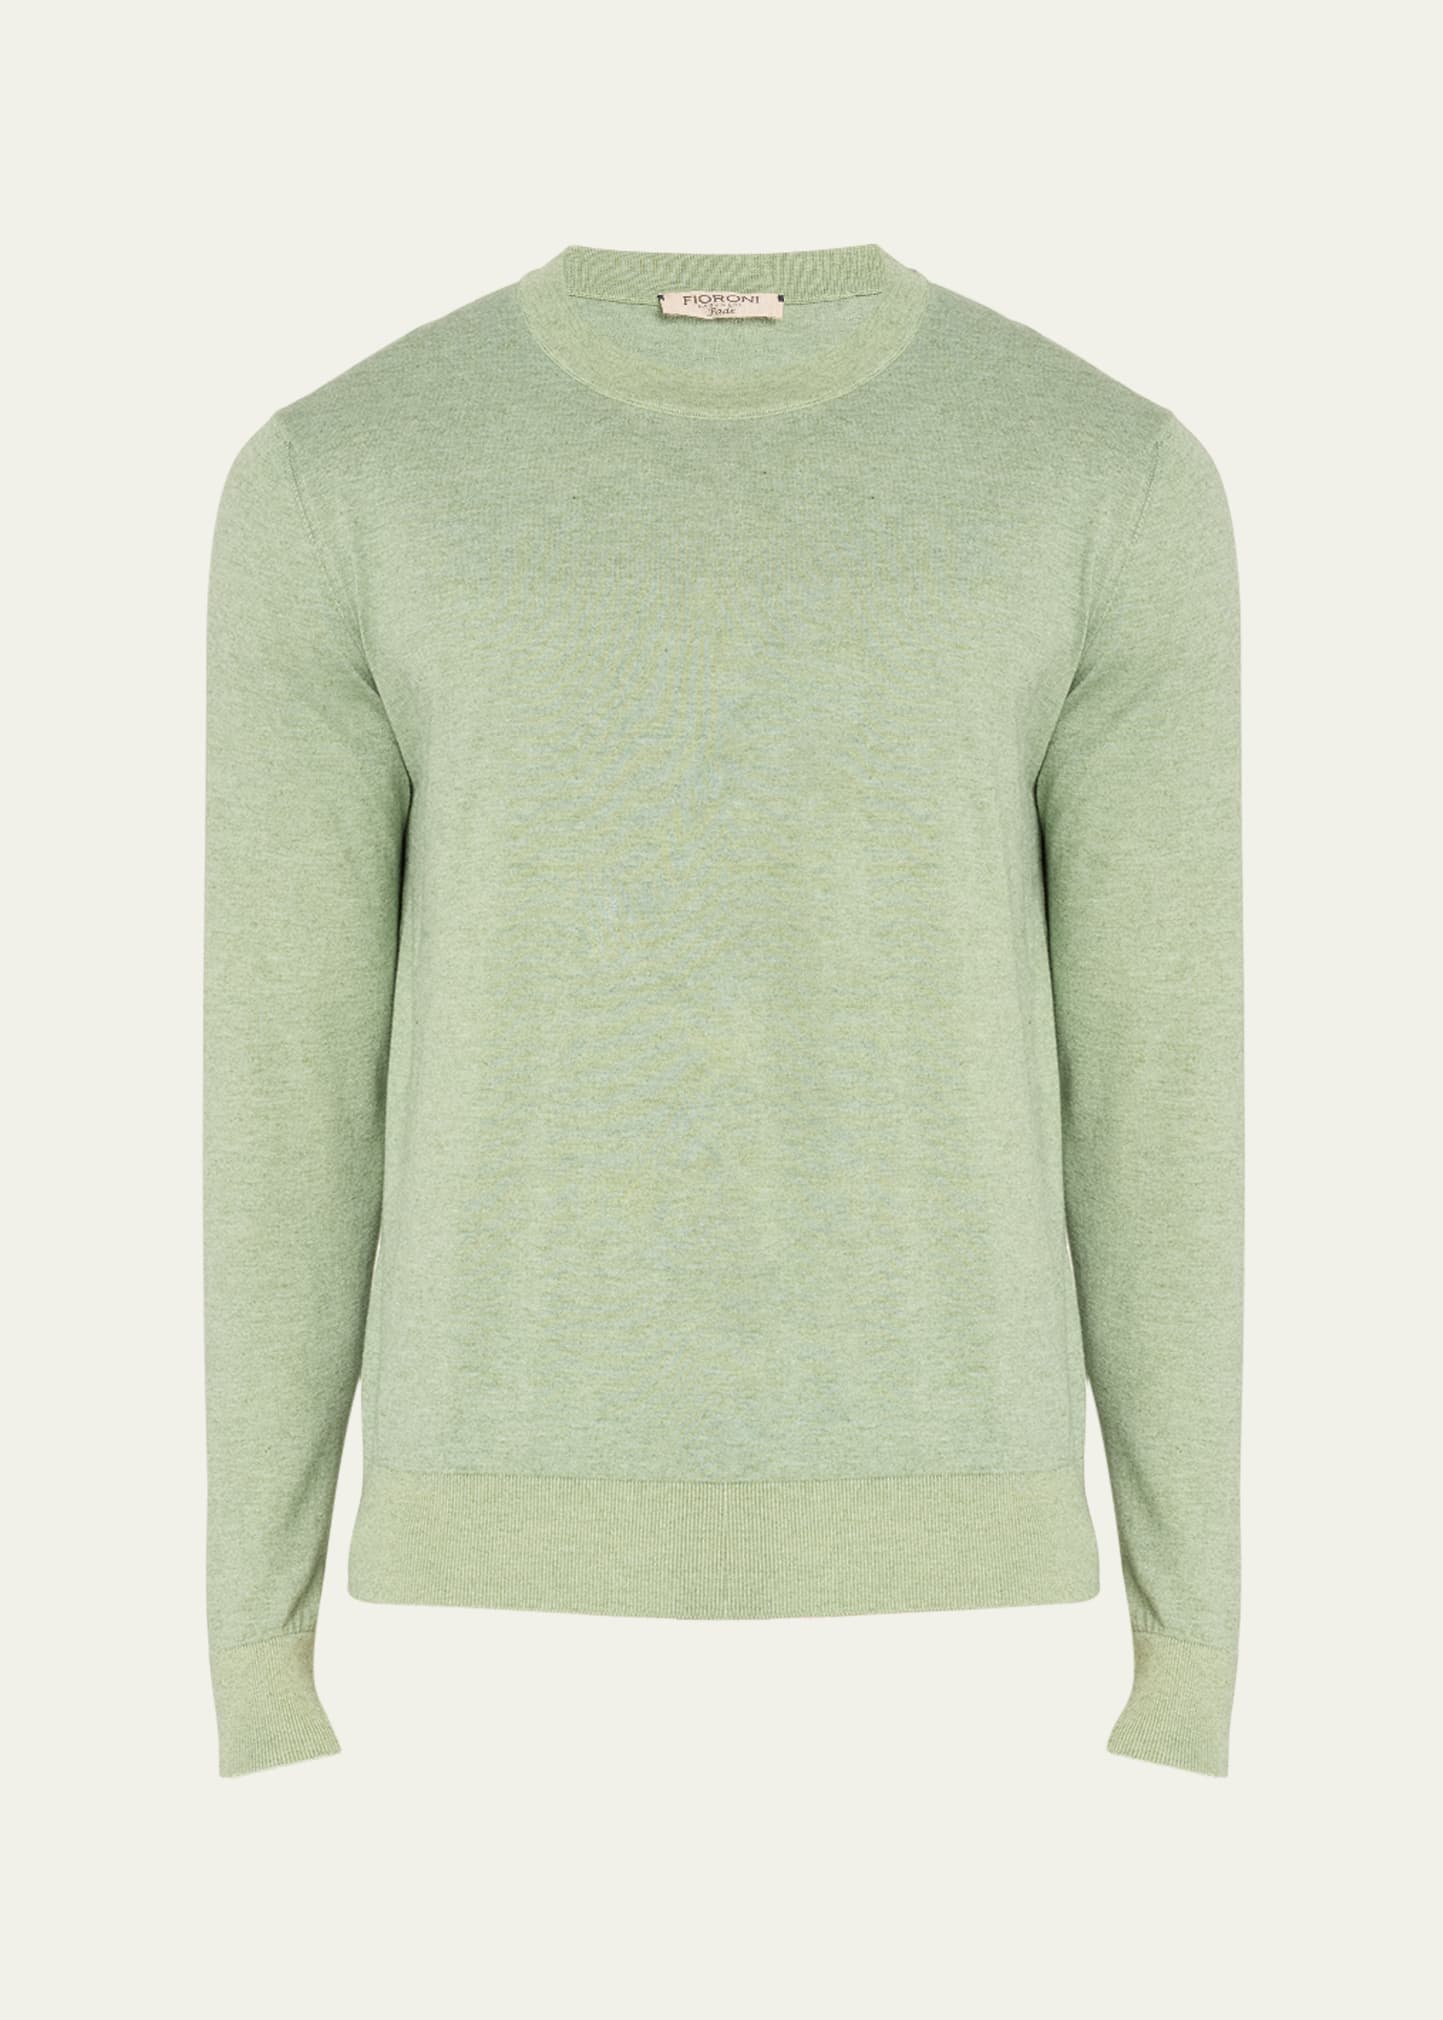 Shop Fioroni Men's Cashmere Cotton Crewneck Sweater In Y1 Verde